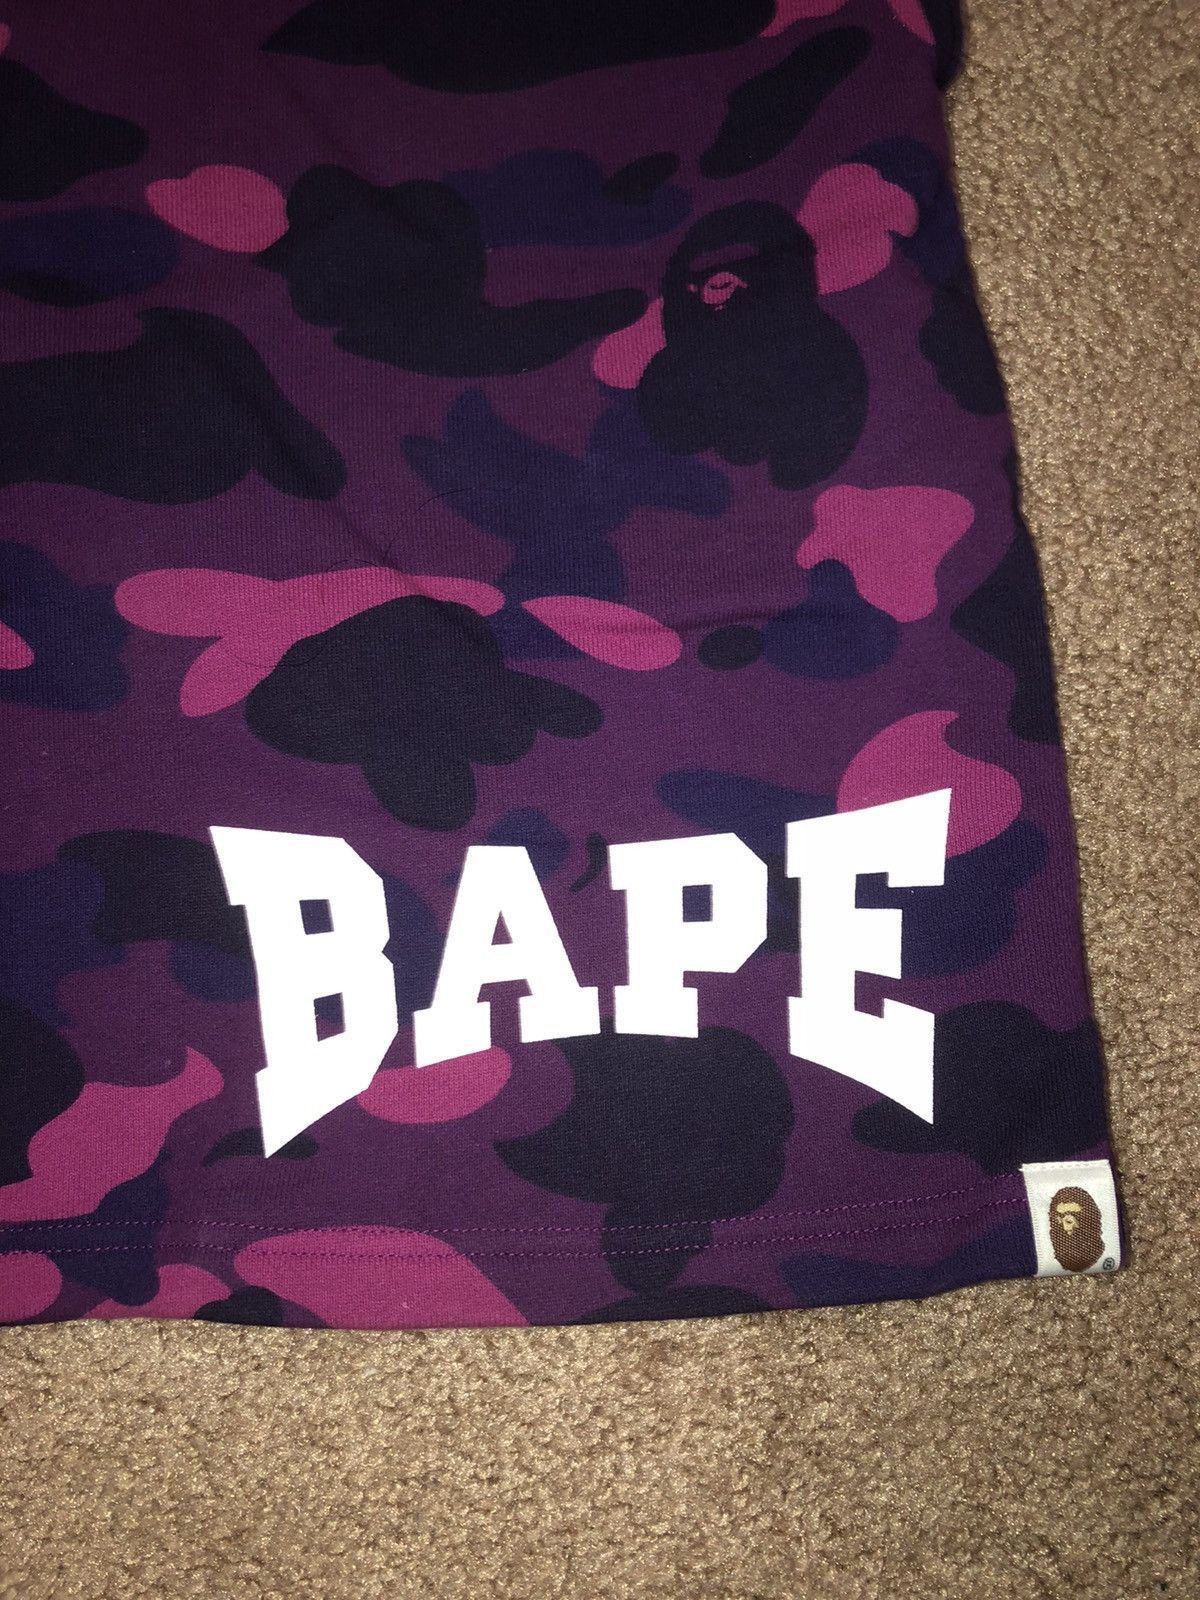 Bape Bape Purple Camo Shorts Size US 34 / EU 50 - 3 Thumbnail